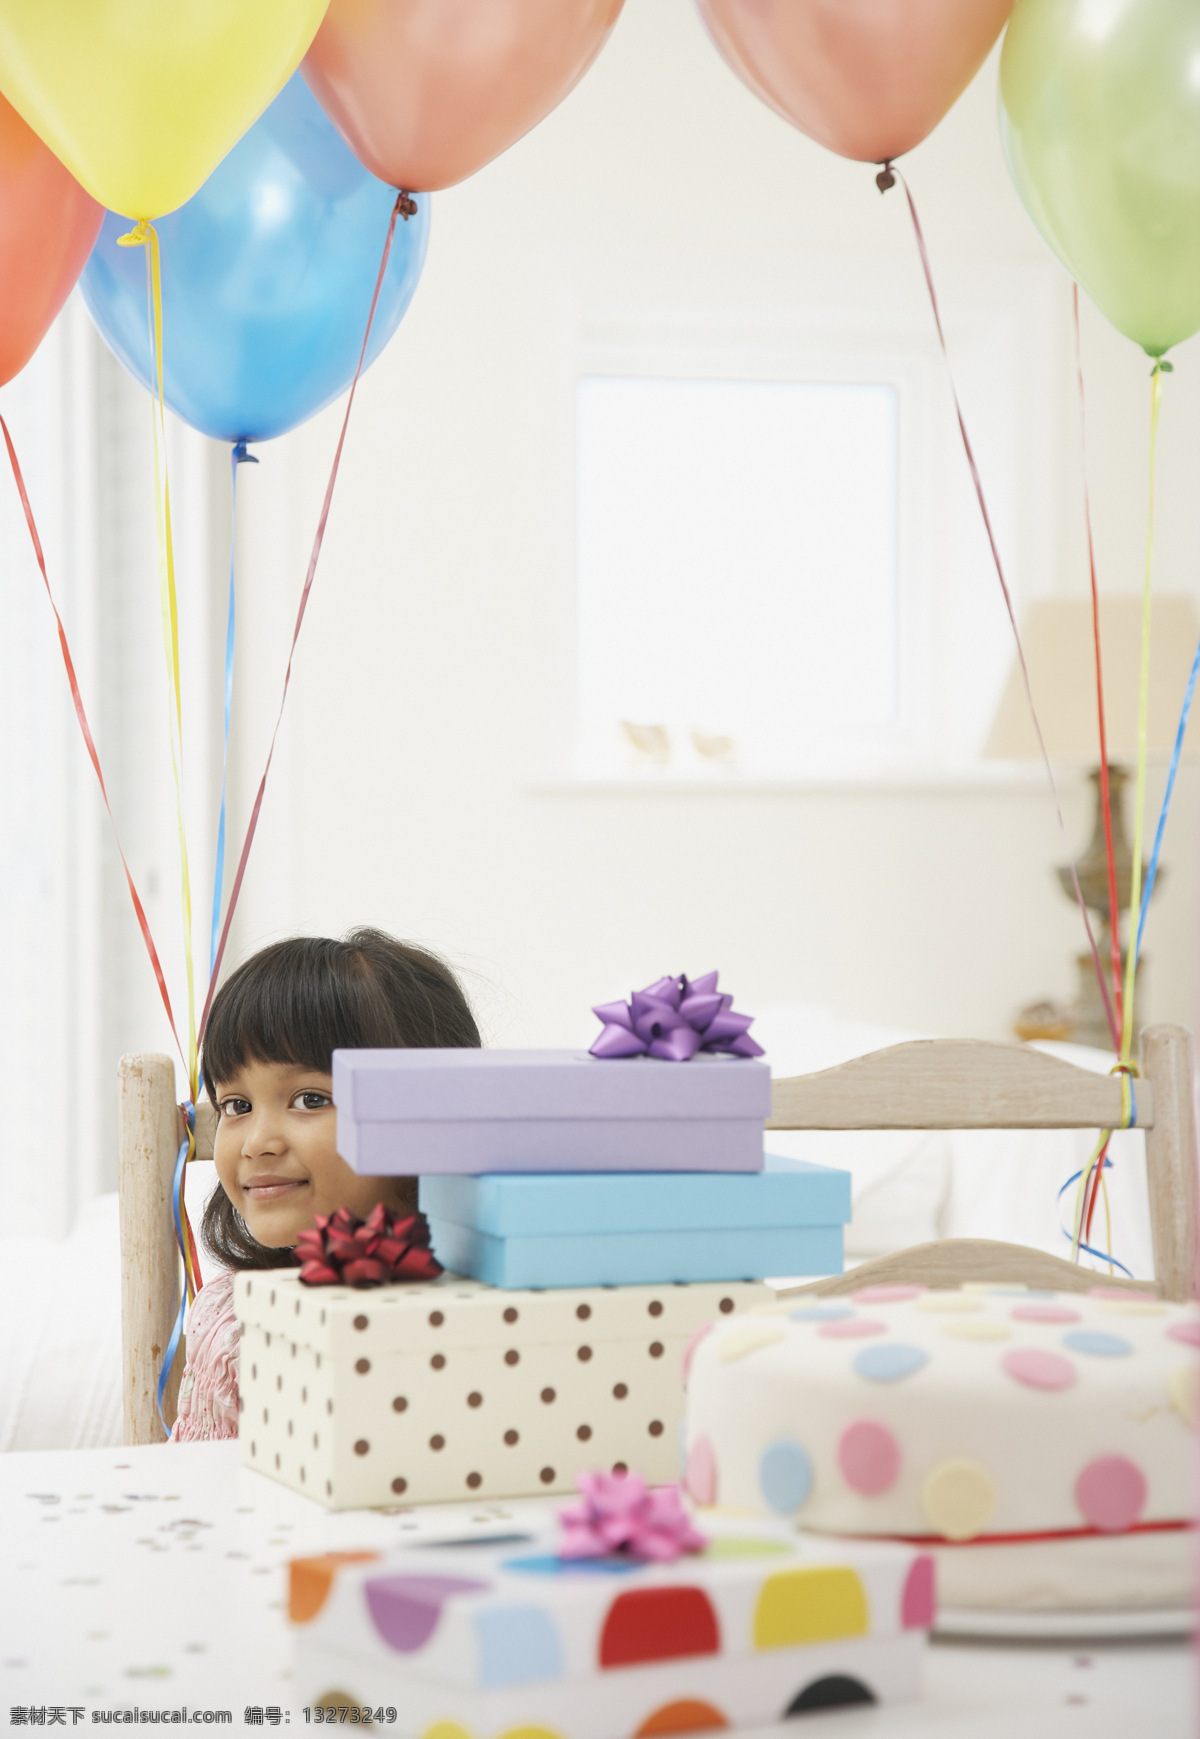 礼物 可爱 小女孩 外国家庭 孩子 儿童 气球 和谐 人物素材 温馨家庭 幸福 生活人物 人物图库 人物图片